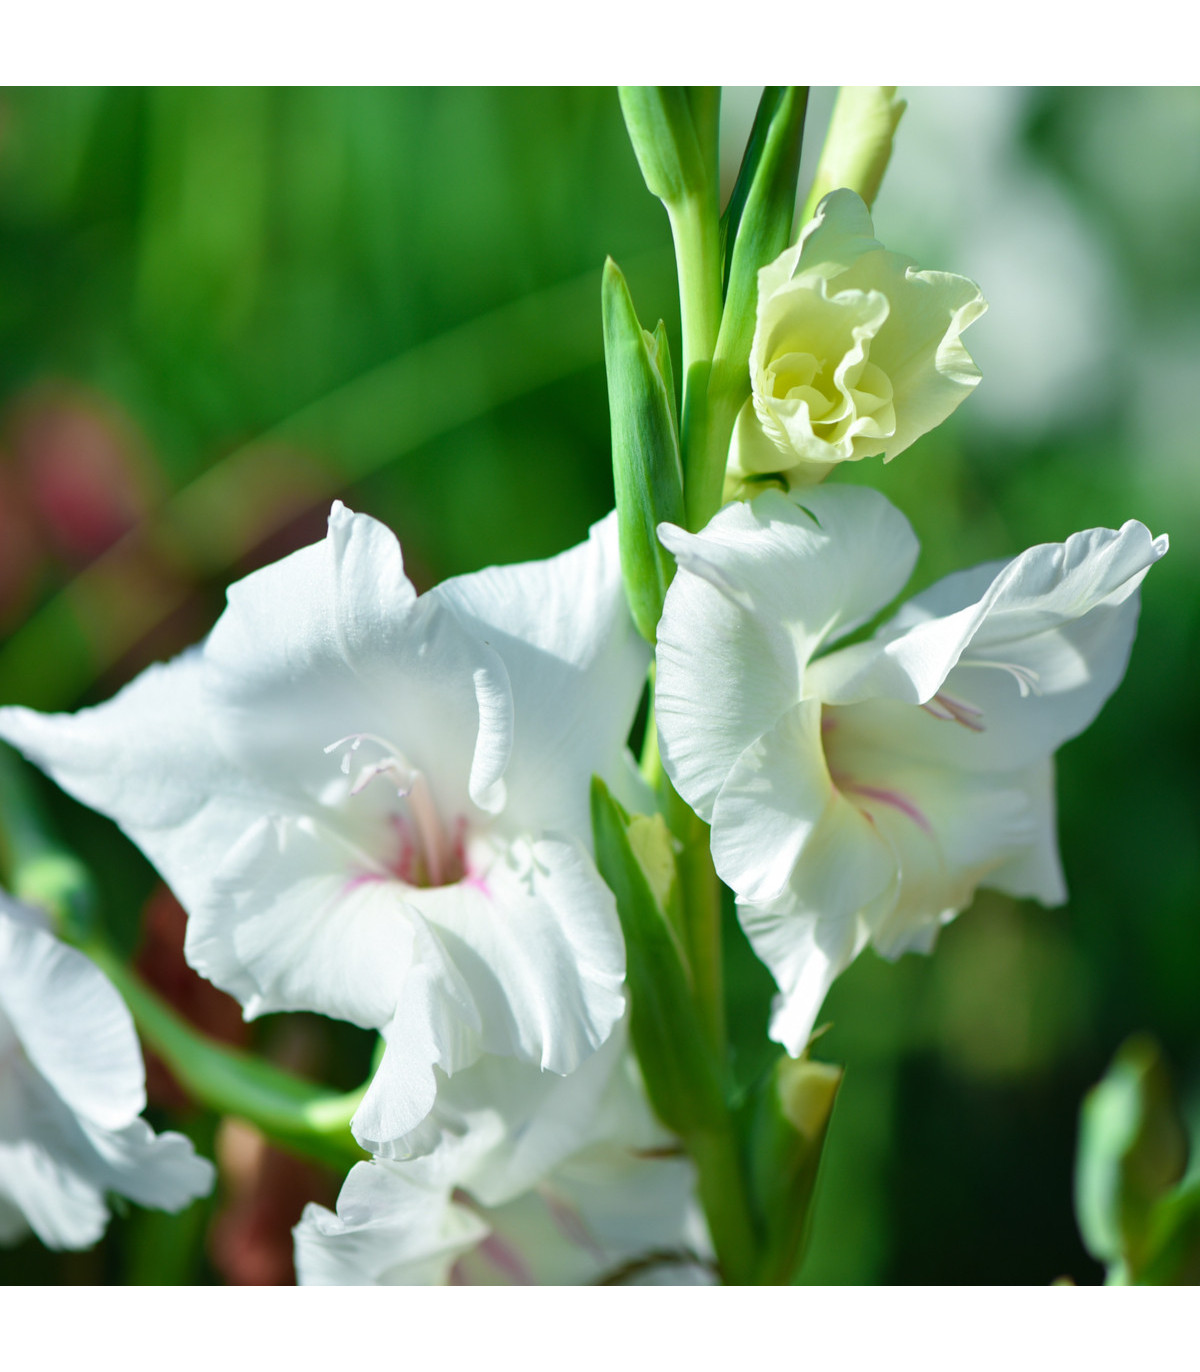 Gladiola biela - Gladiolus White Prosperity - gladioly - hľuzy gladioly - 3 ks